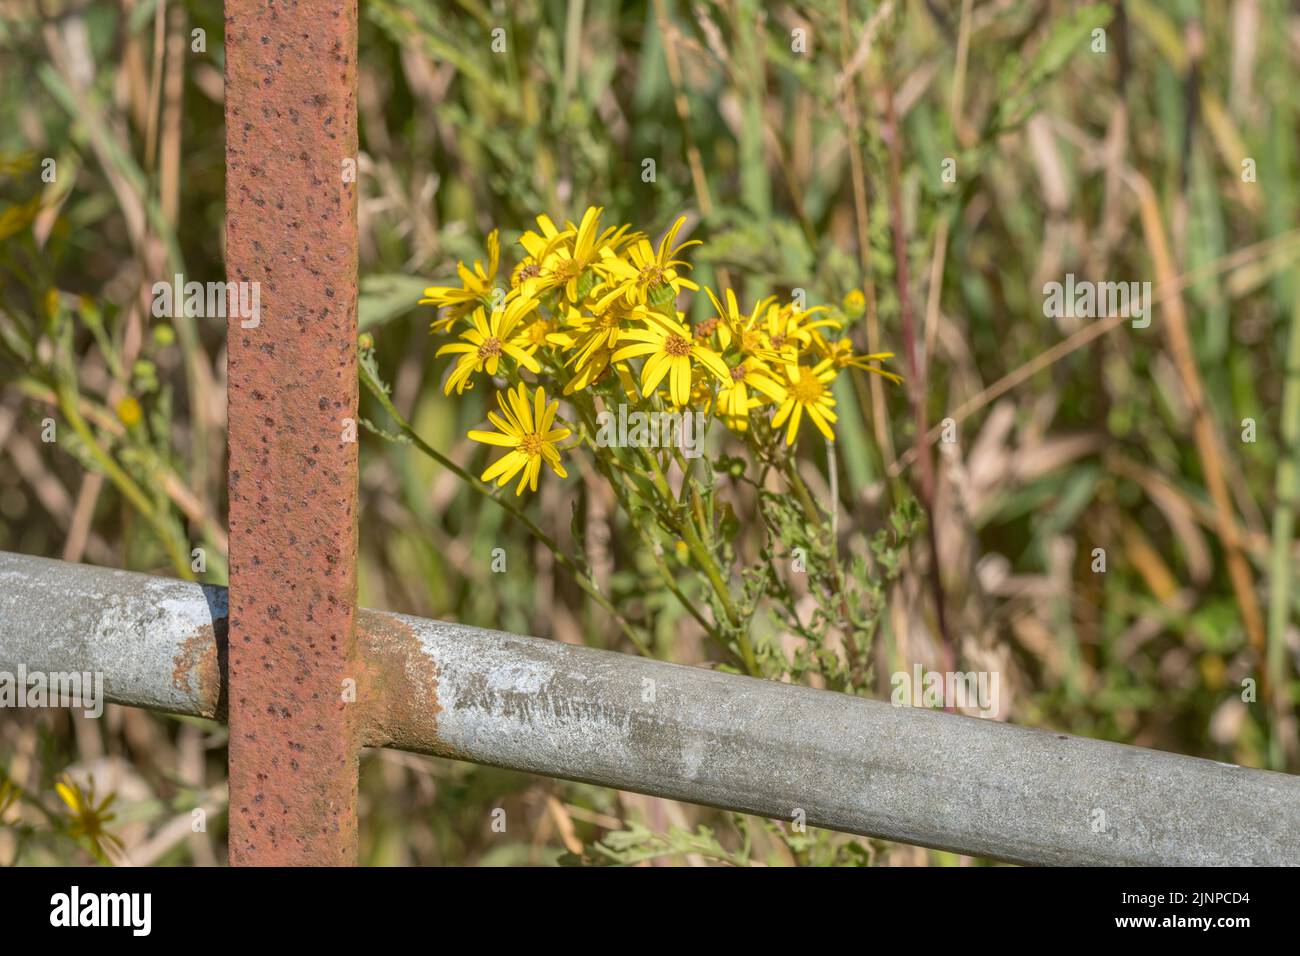 Gelbe Blütengruppe der Gemeinen Ragwurz / jacobaea vulgaris syn Senecio jacobaea der Familie der Asteraceae. Ein schädliches Agrarunkraut nach dem Unkraut-Gesetz. Stockfoto